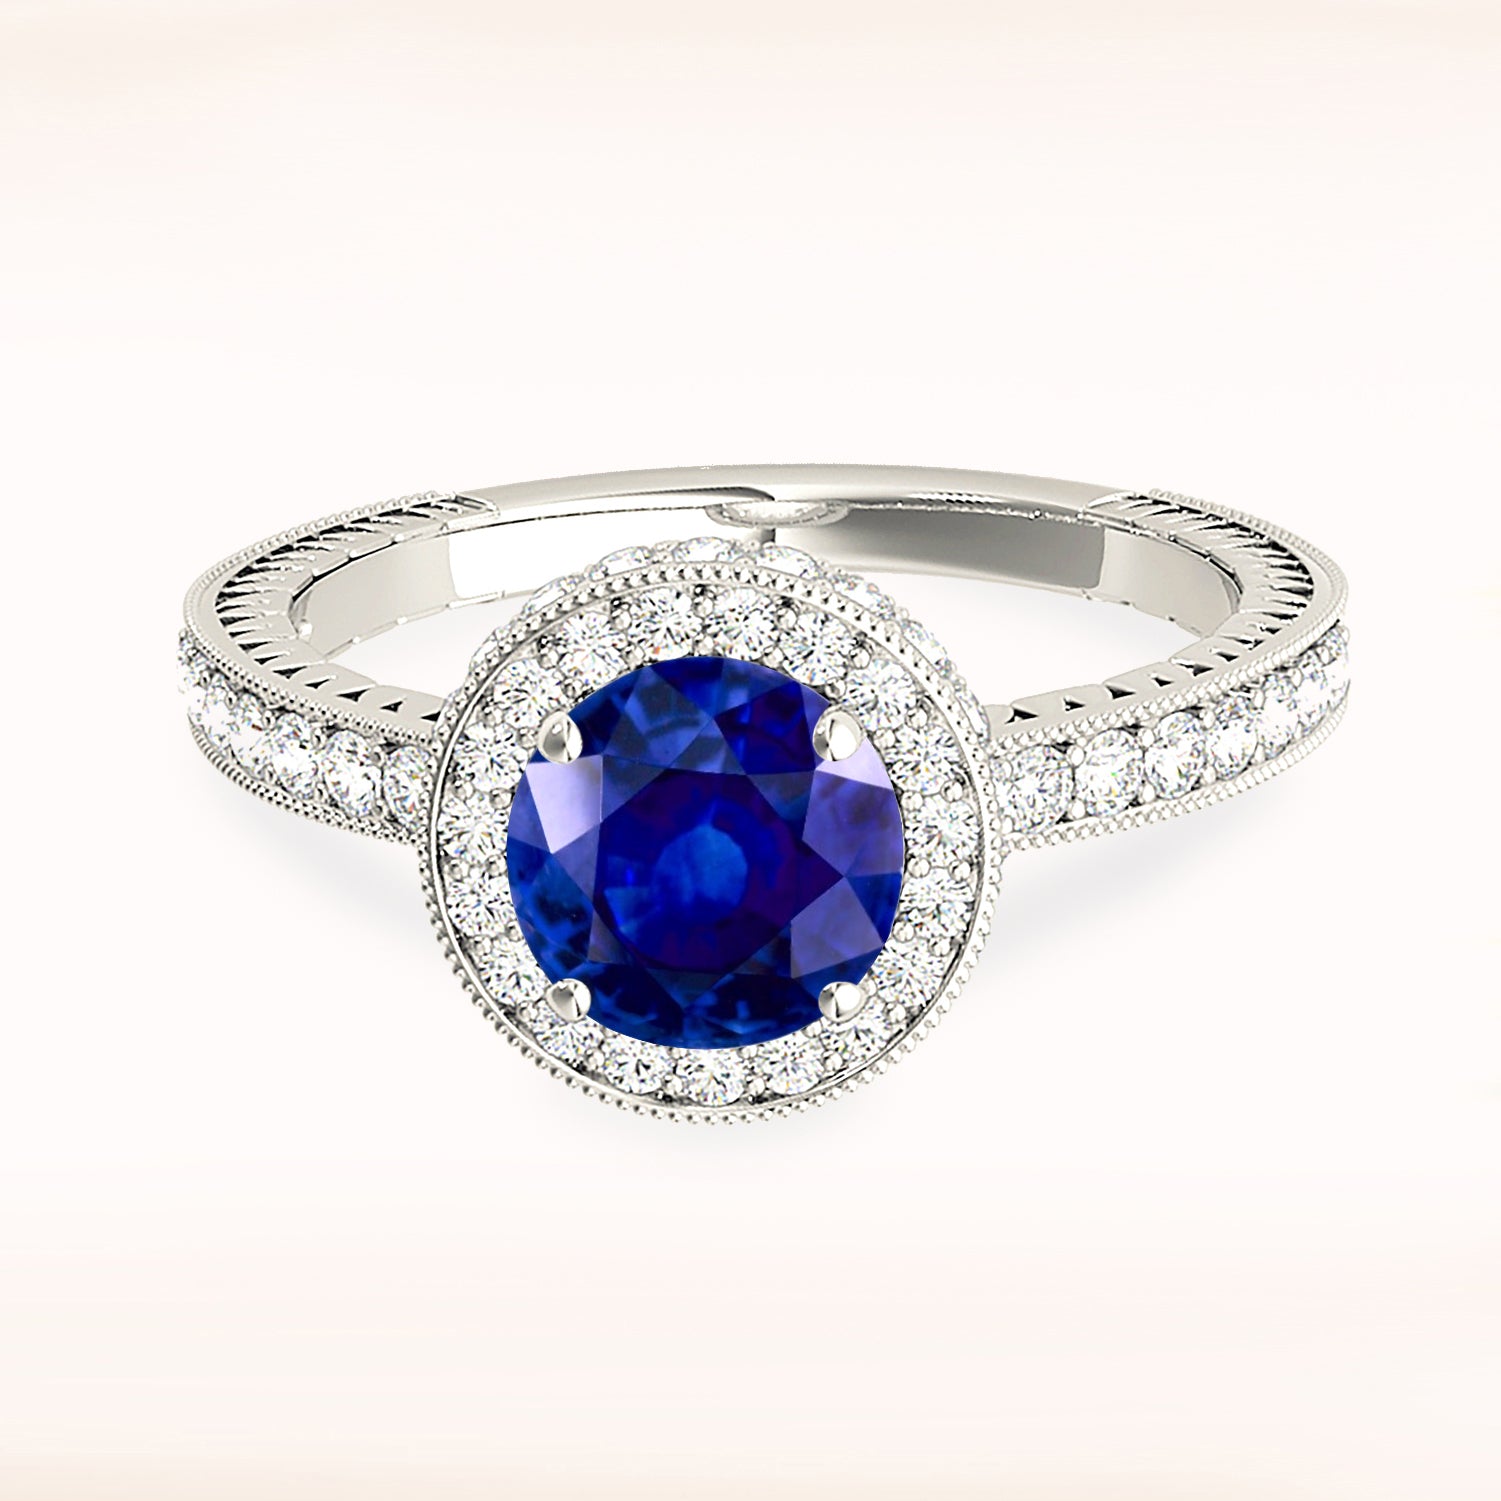 1.35 ct. Genuine Blue Sapphire and 0.50 ctw. Diamond Gemstone Ring-in 14K/18K White, Yellow, Rose Gold and Platinum - Christmas Jewelry Gift -VIRABYANI